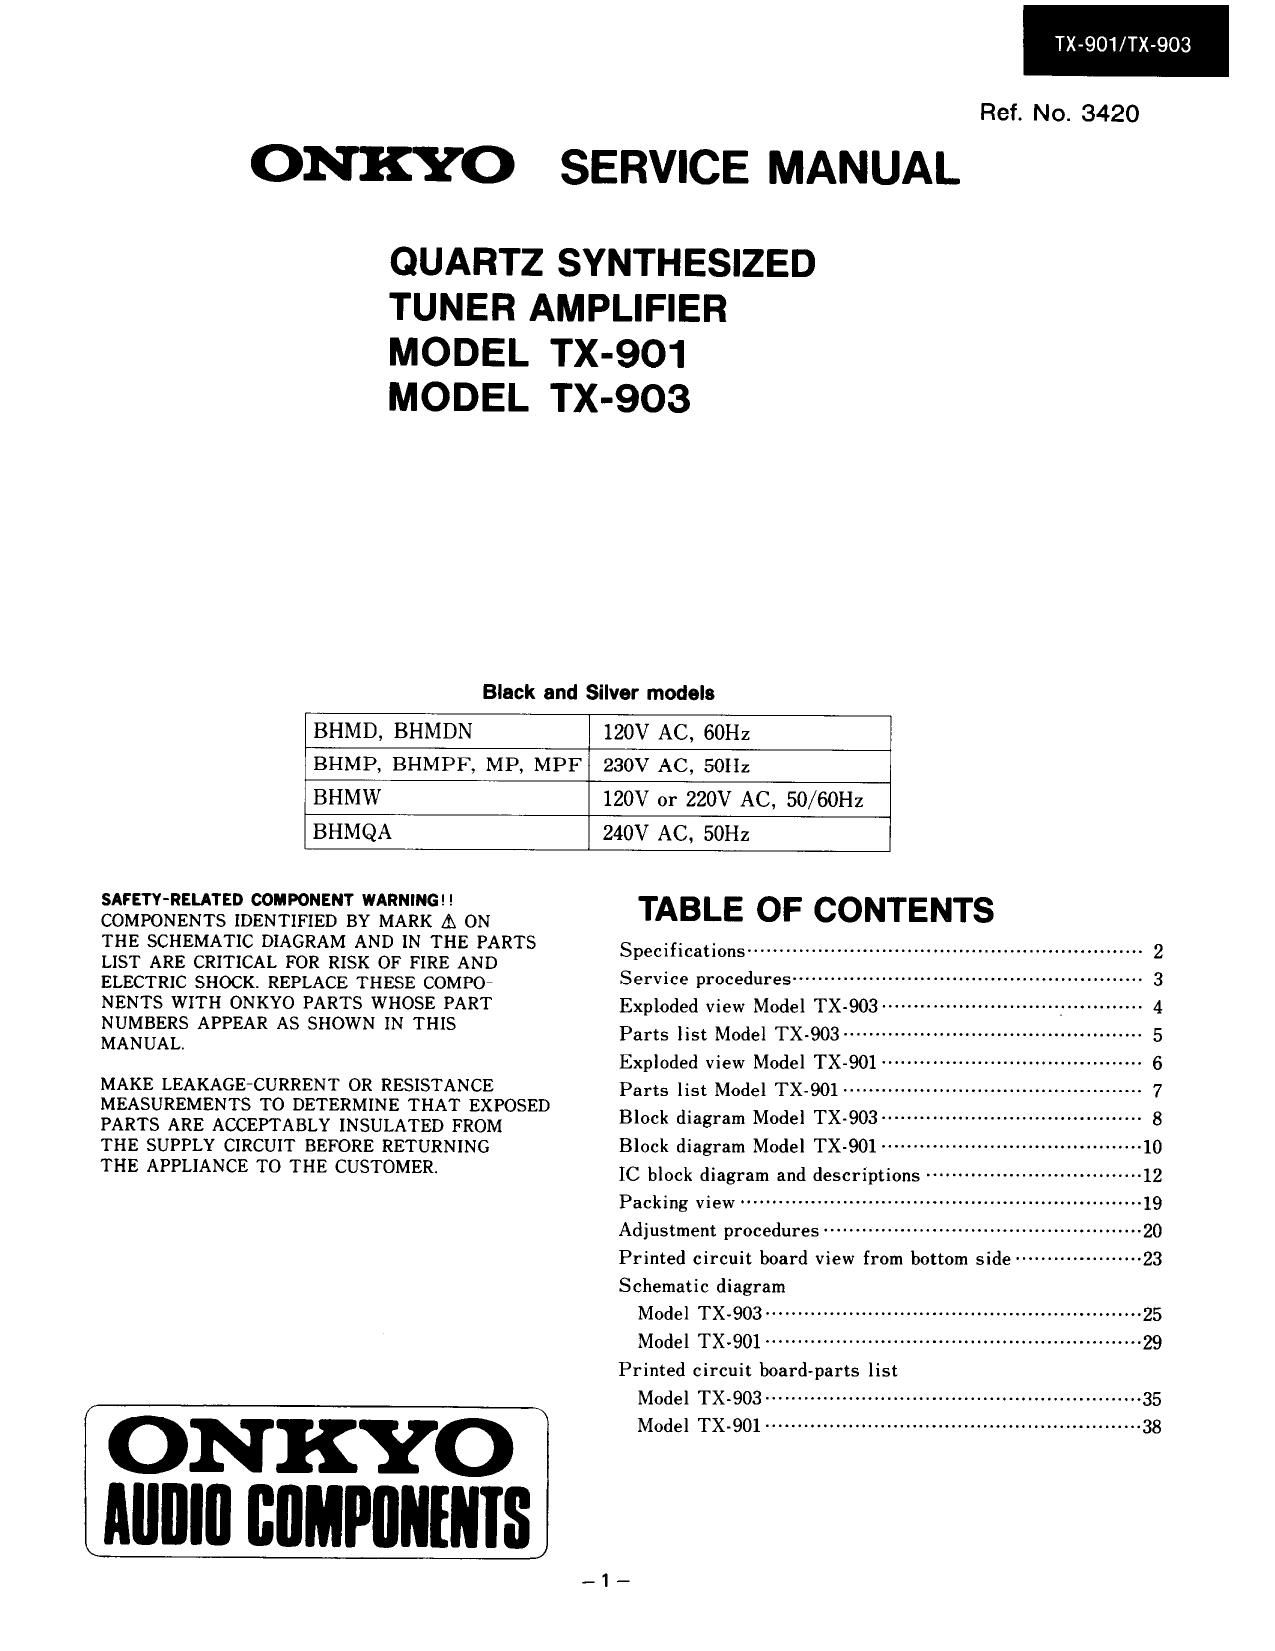 Onkyo TX 903 Service Manual